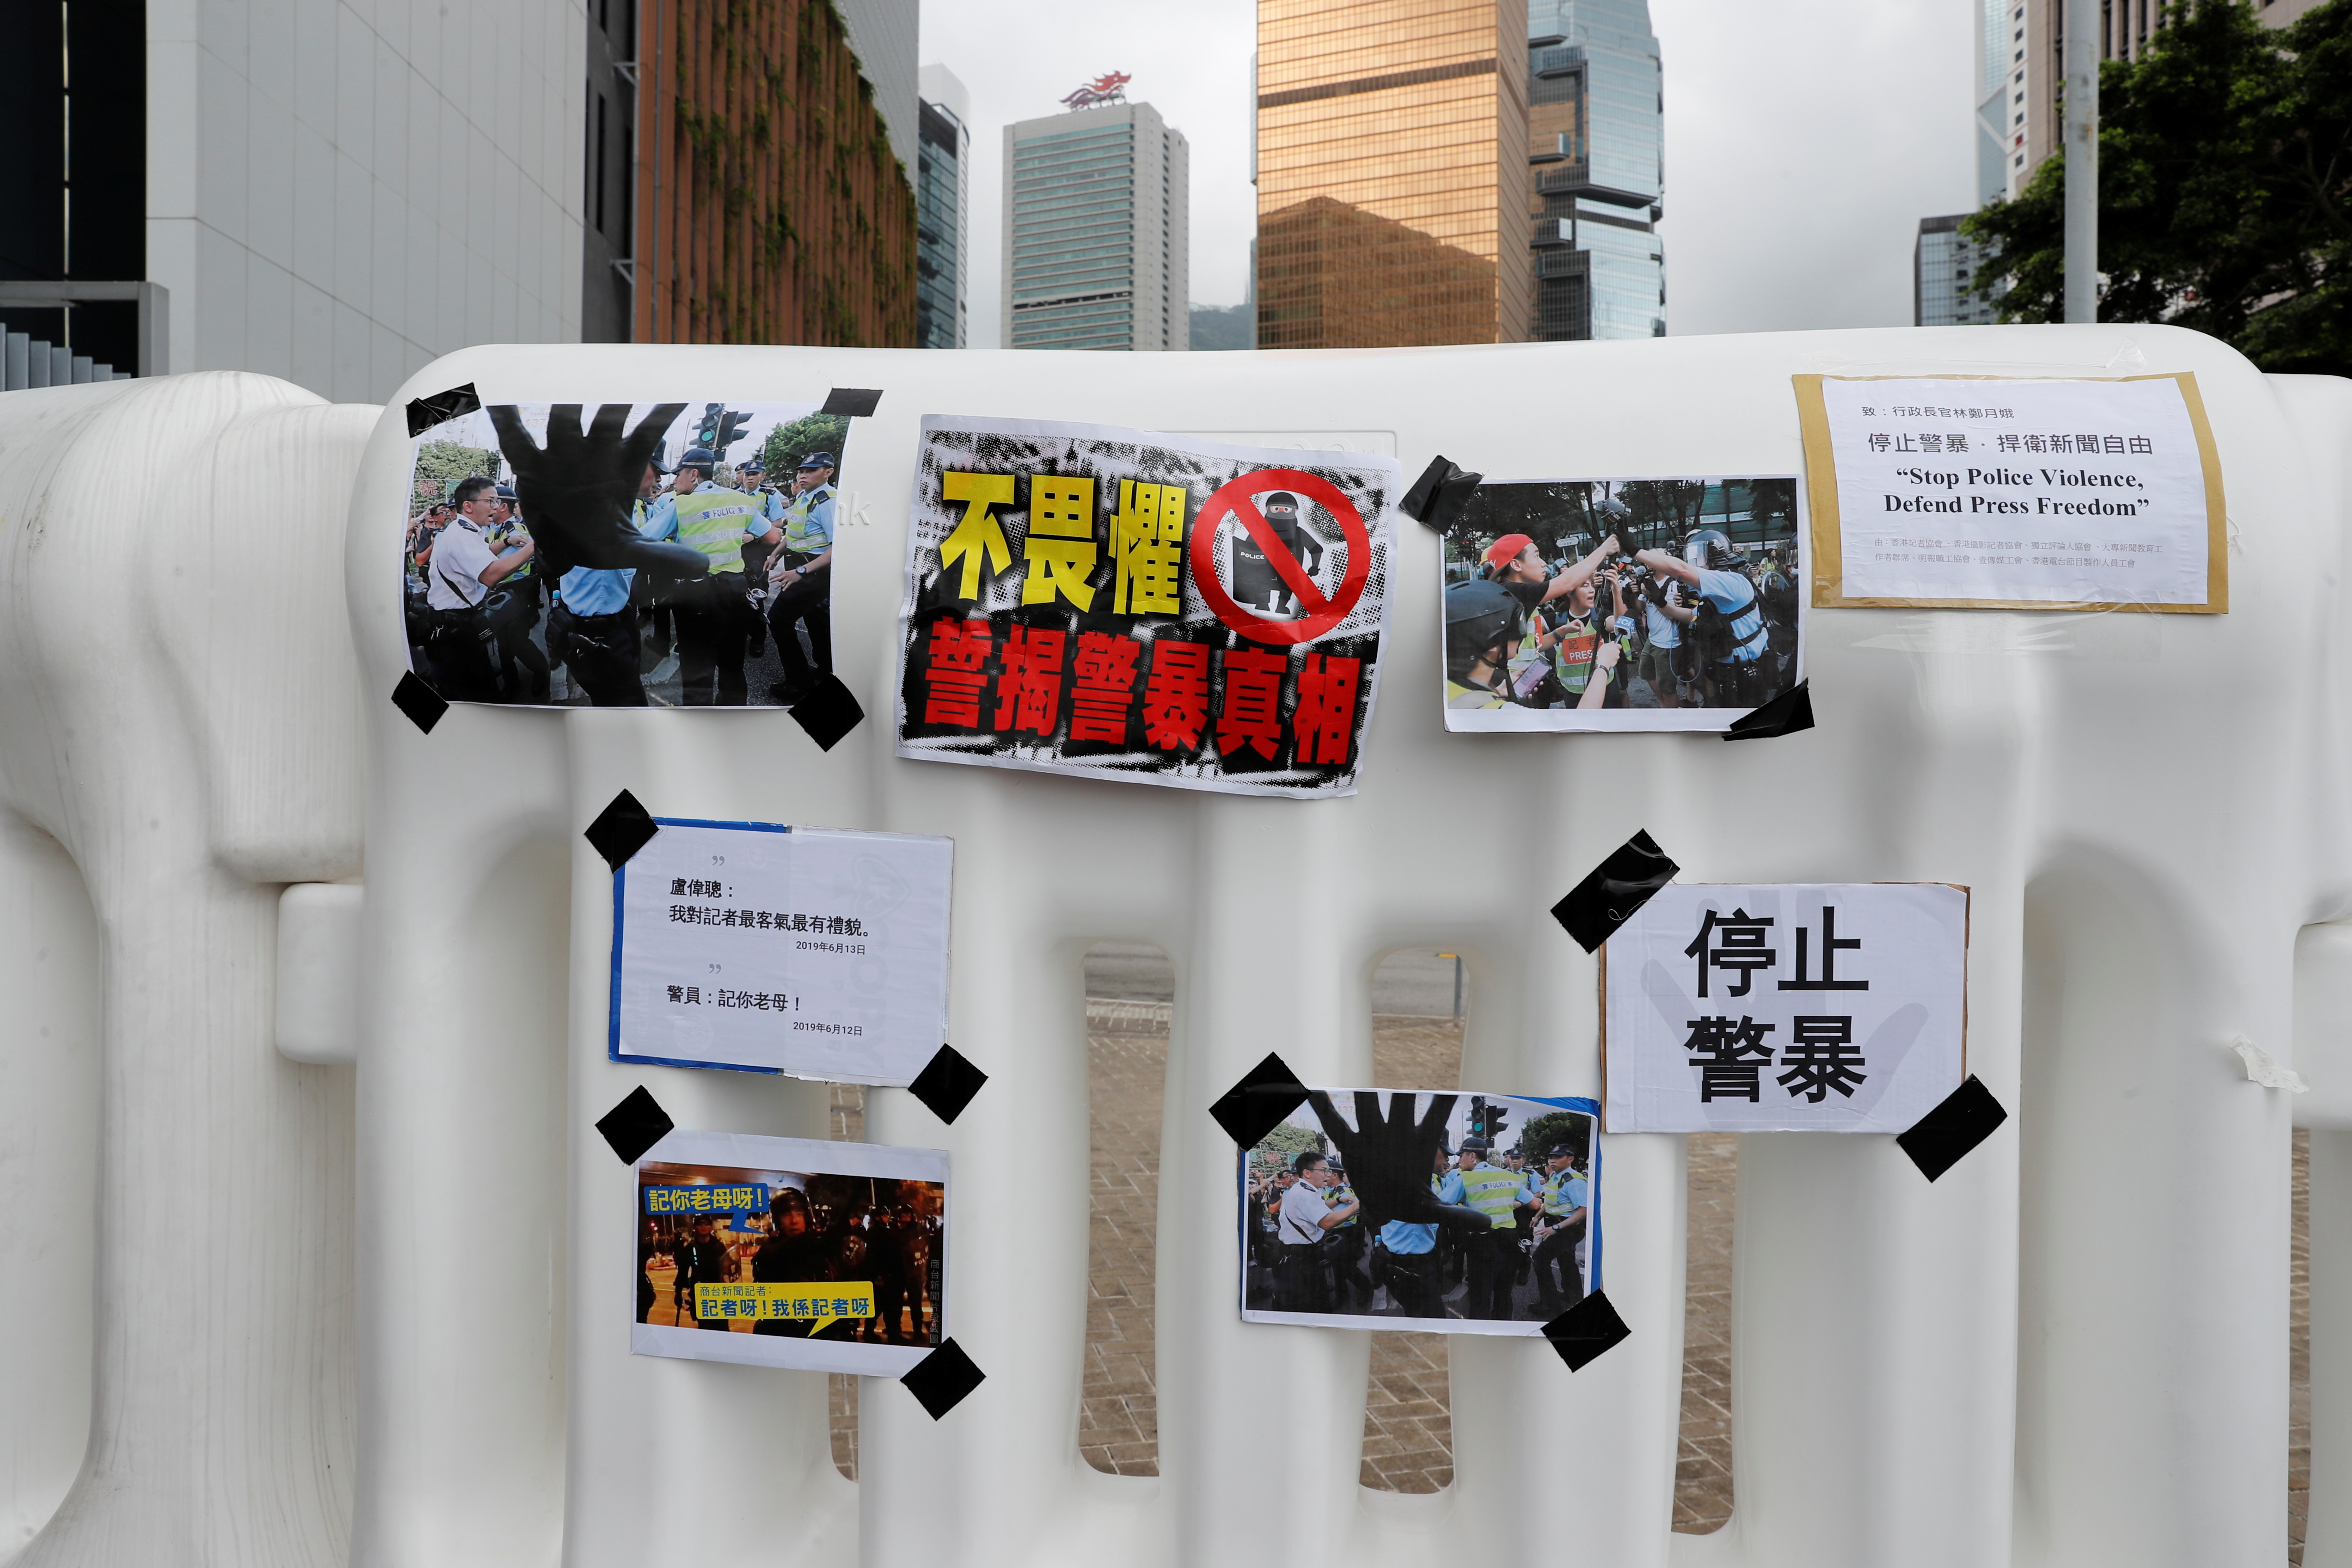 7个工会的代表们也将记者遭粗暴对待的相片及声明书，贴在特首办外围围栏上。-路透社-